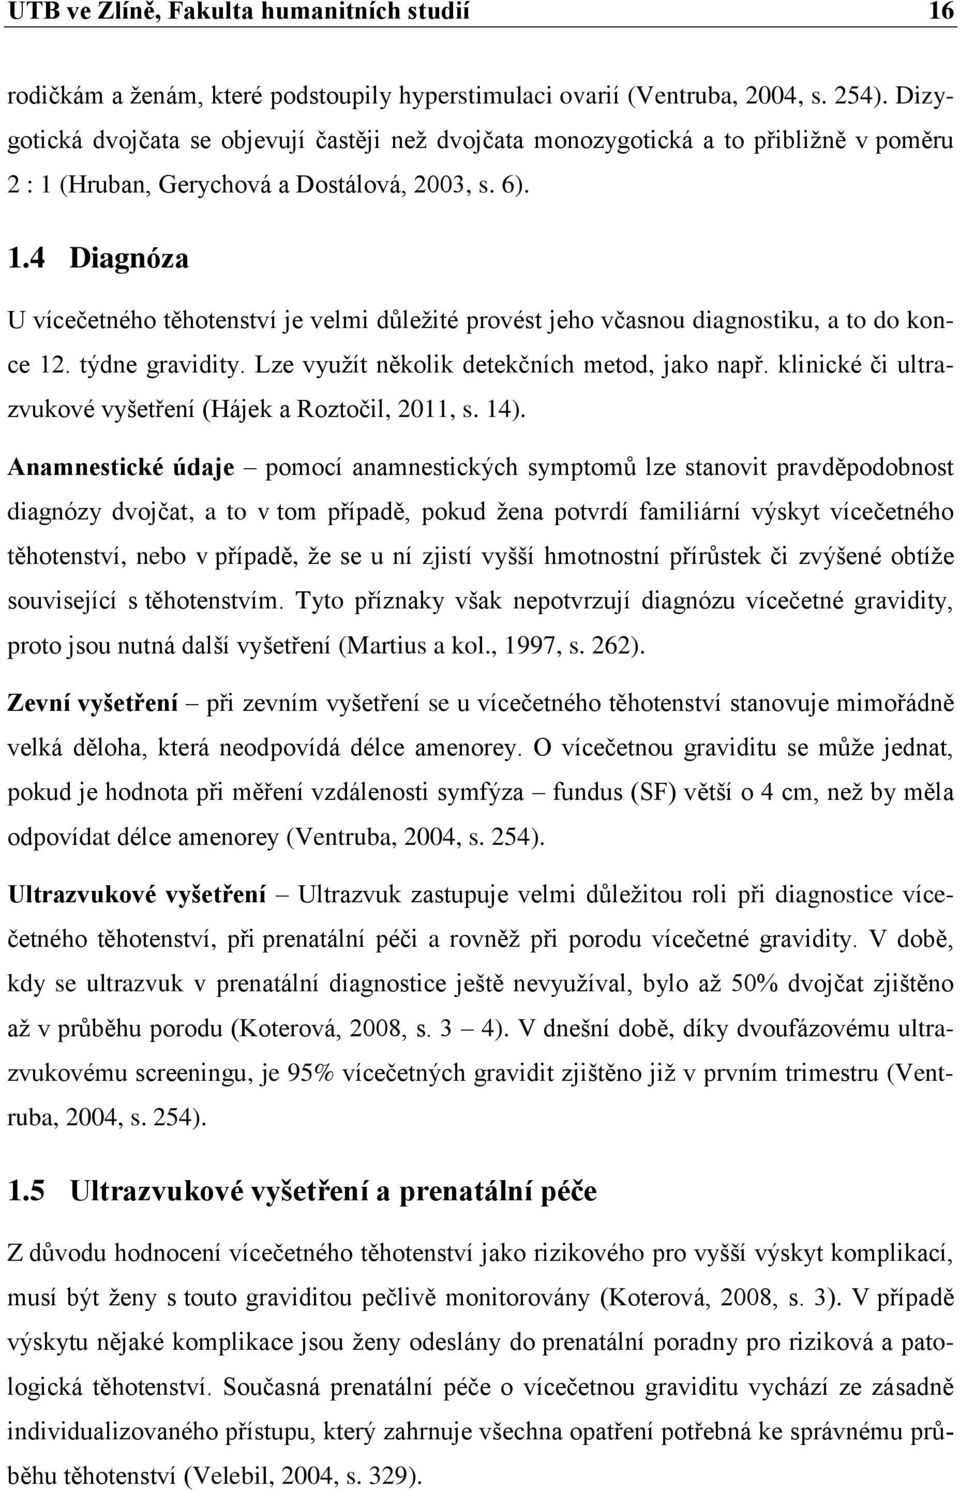 (Hruban, Gerychová a Dostálová, 2003, s. 6). 1.4 Diagnóza U vícečetného těhotenství je velmi důleţité provést jeho včasnou diagnostiku, a to do konce 12. týdne gravidity.